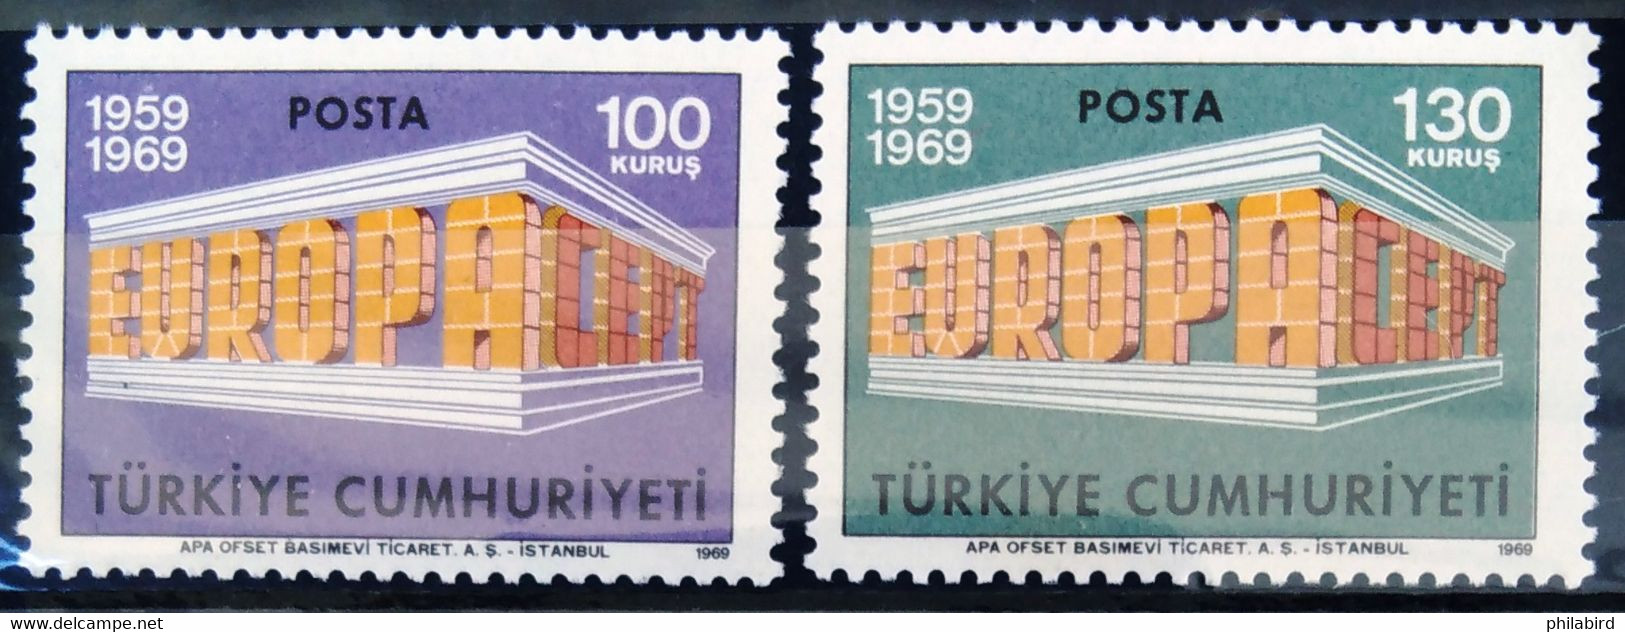 EUROPA 1969 - TURQUIE                  N° 1891/1892                    NEUF** - 1969